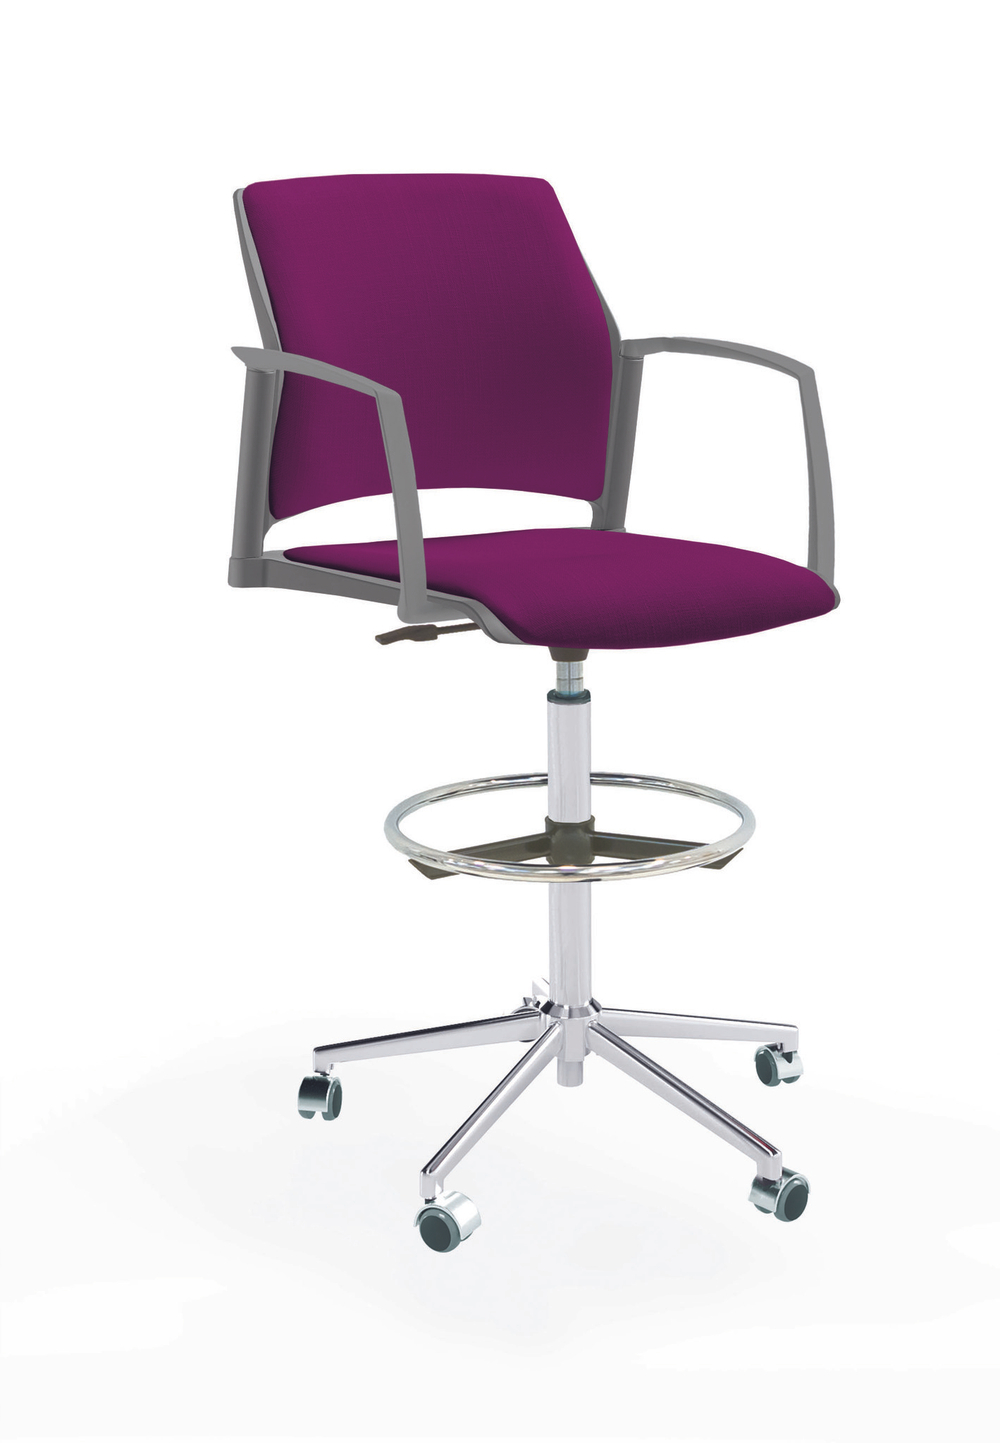 Кресло Rewind каркас хром, пластик серый, база стальная хромированная, с закрытыми подлокотниками, сиденье и спинка фиолетовые